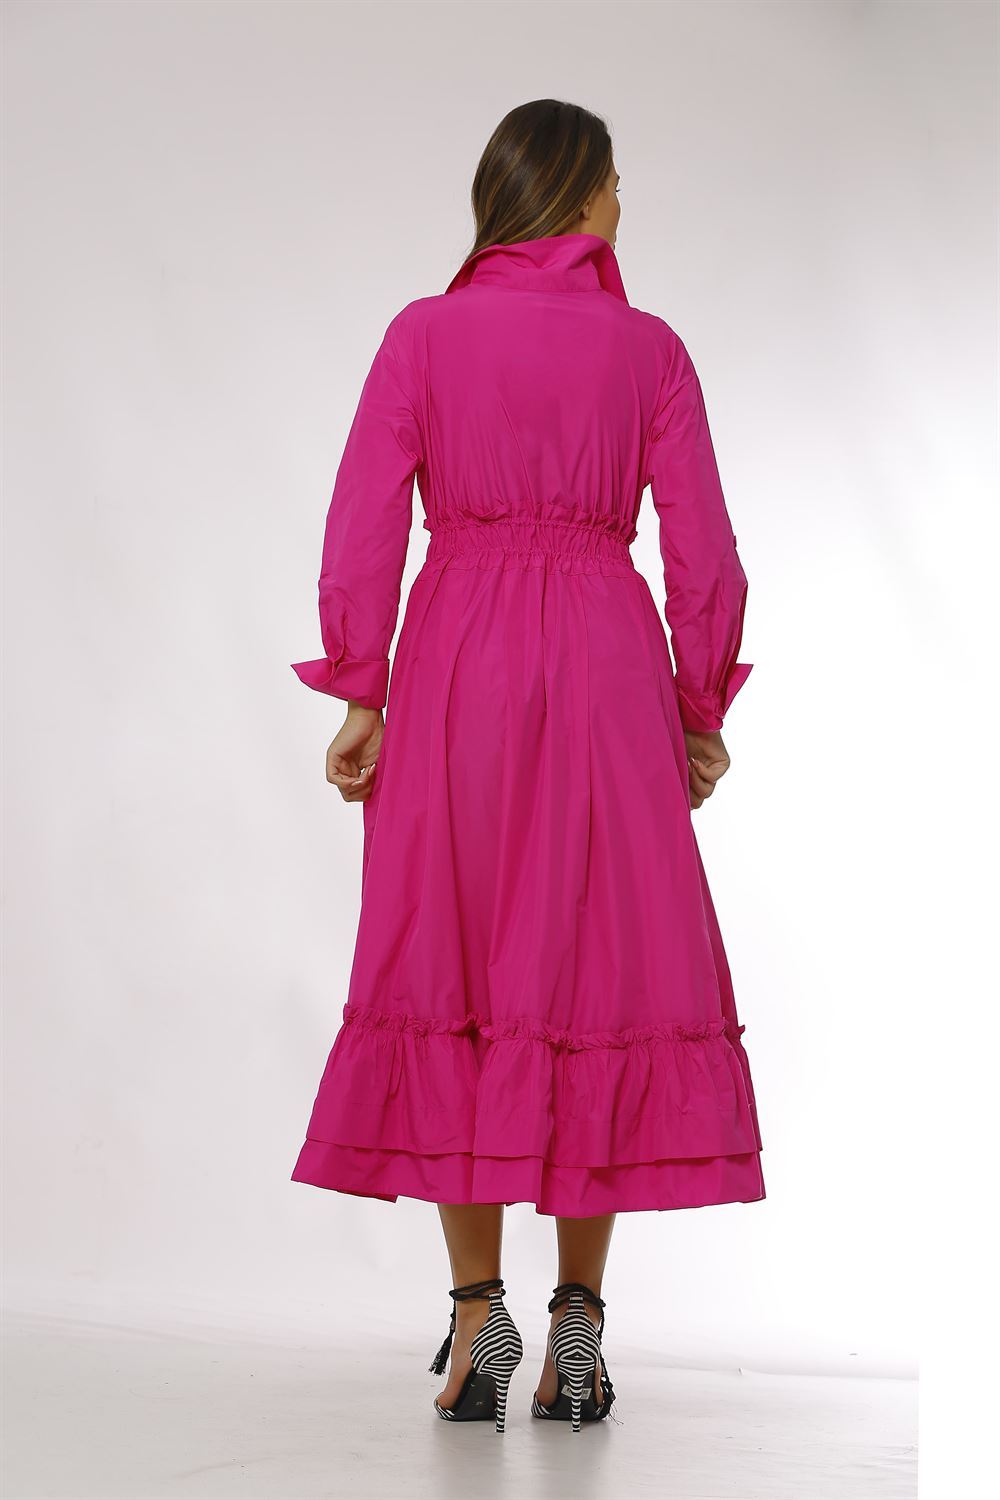 فستان من التفتا بحزام وجيوب جانبية - فوشيا